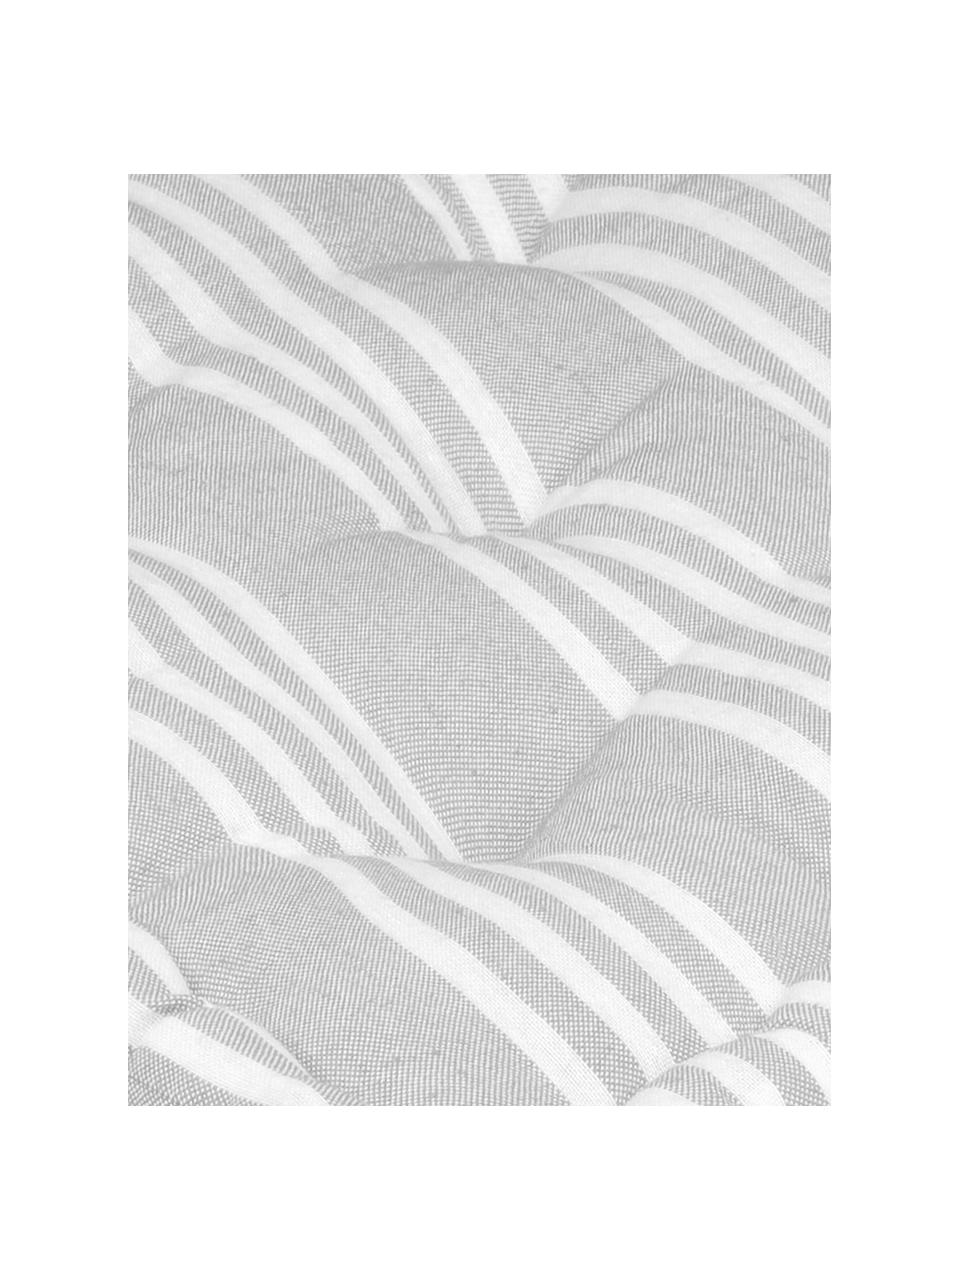 Kleines Bodenkissen Mandelieu in Grau, gestreift, Baumwollgemisch, Hellgrau, Weiß, 45 x 10 cm